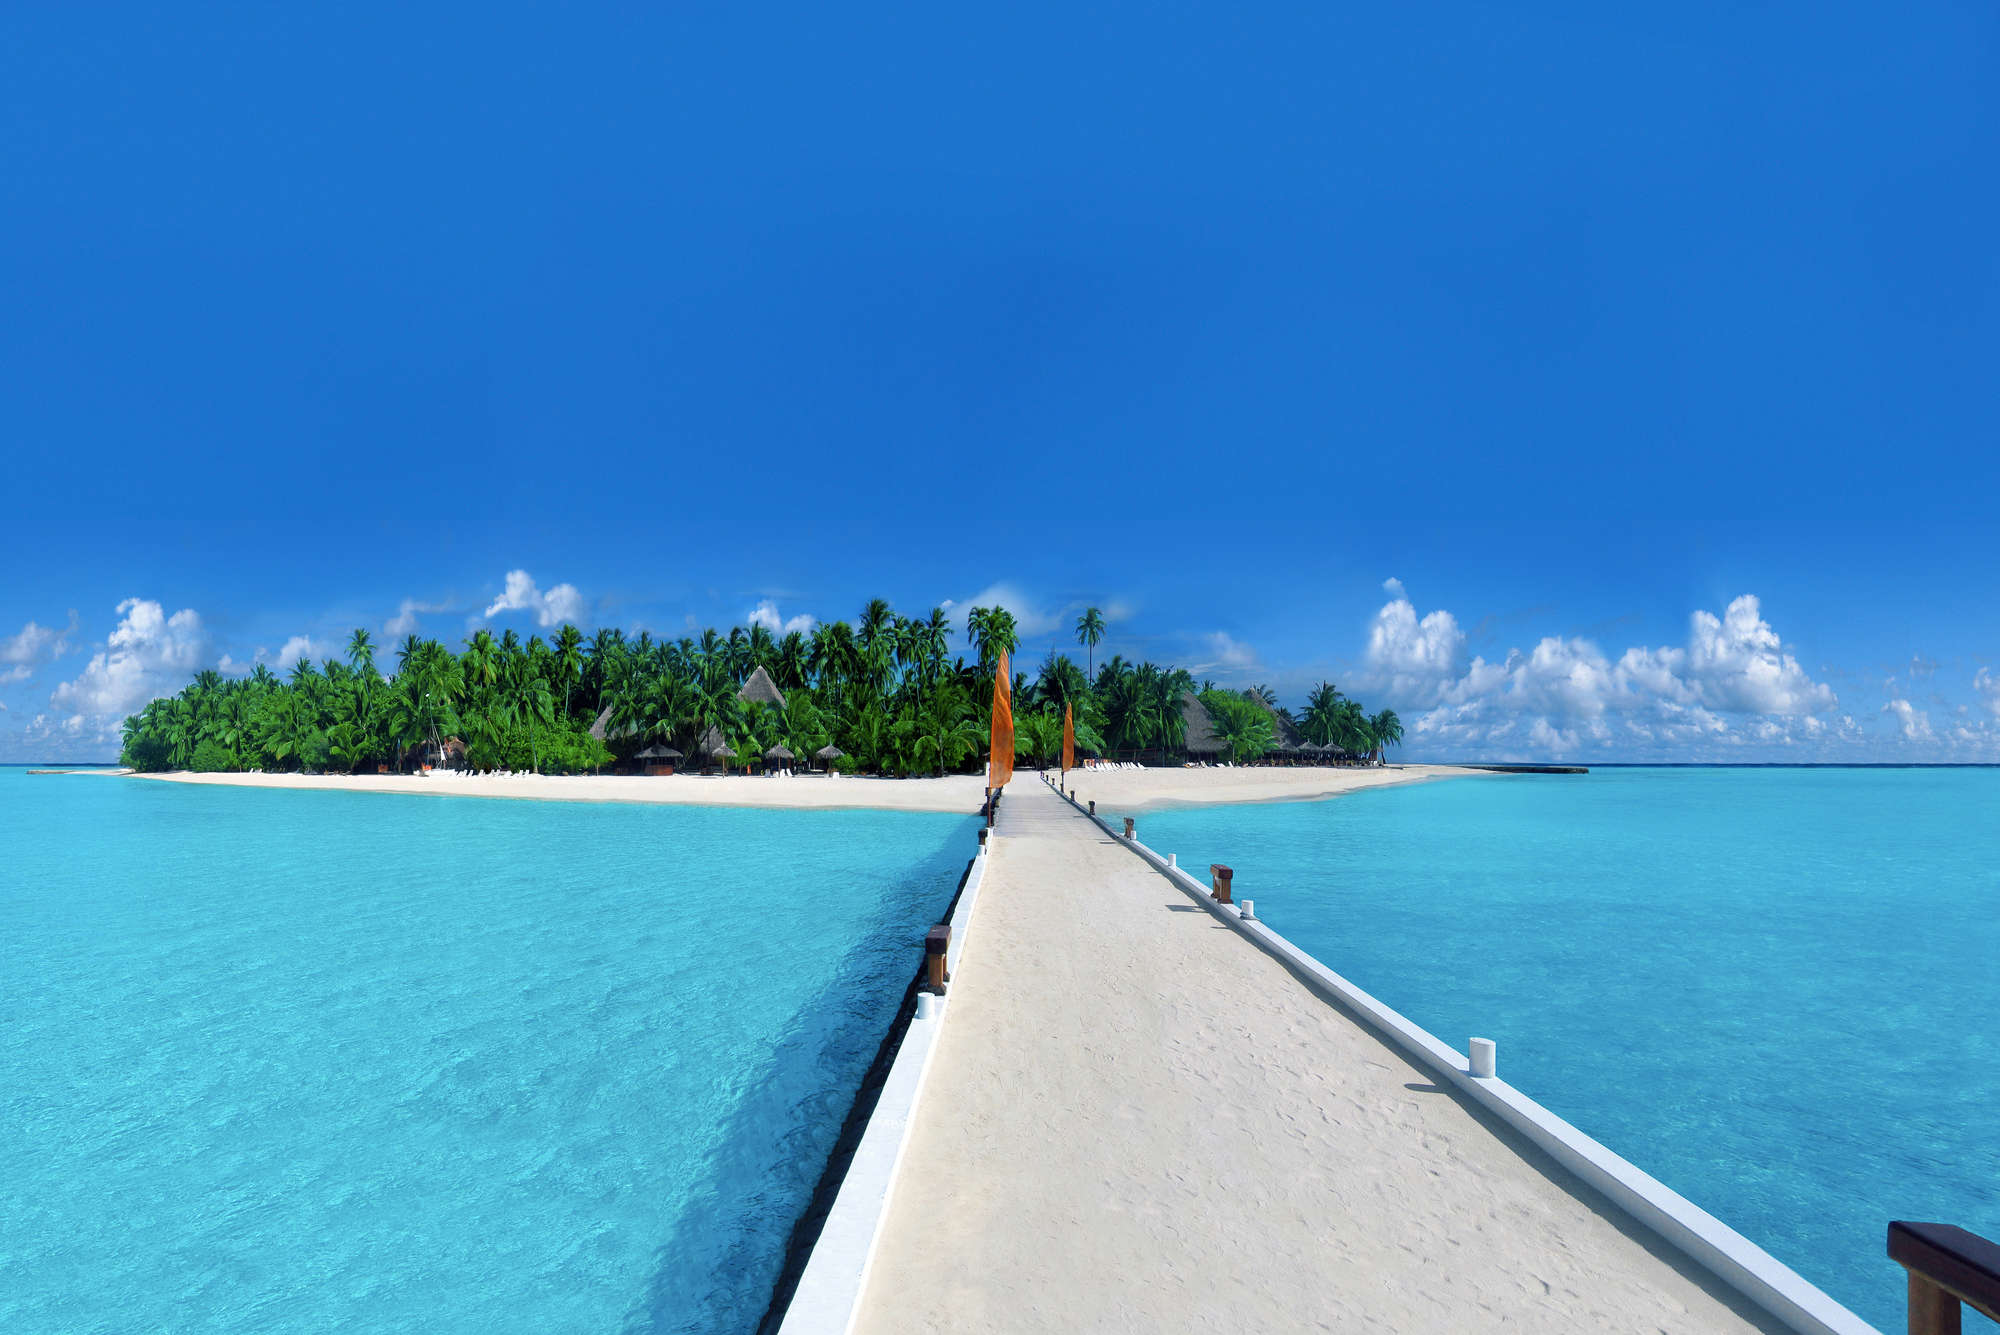             Fototapete Insel mit Steg zum Strand – Mattes Glattvlies
        